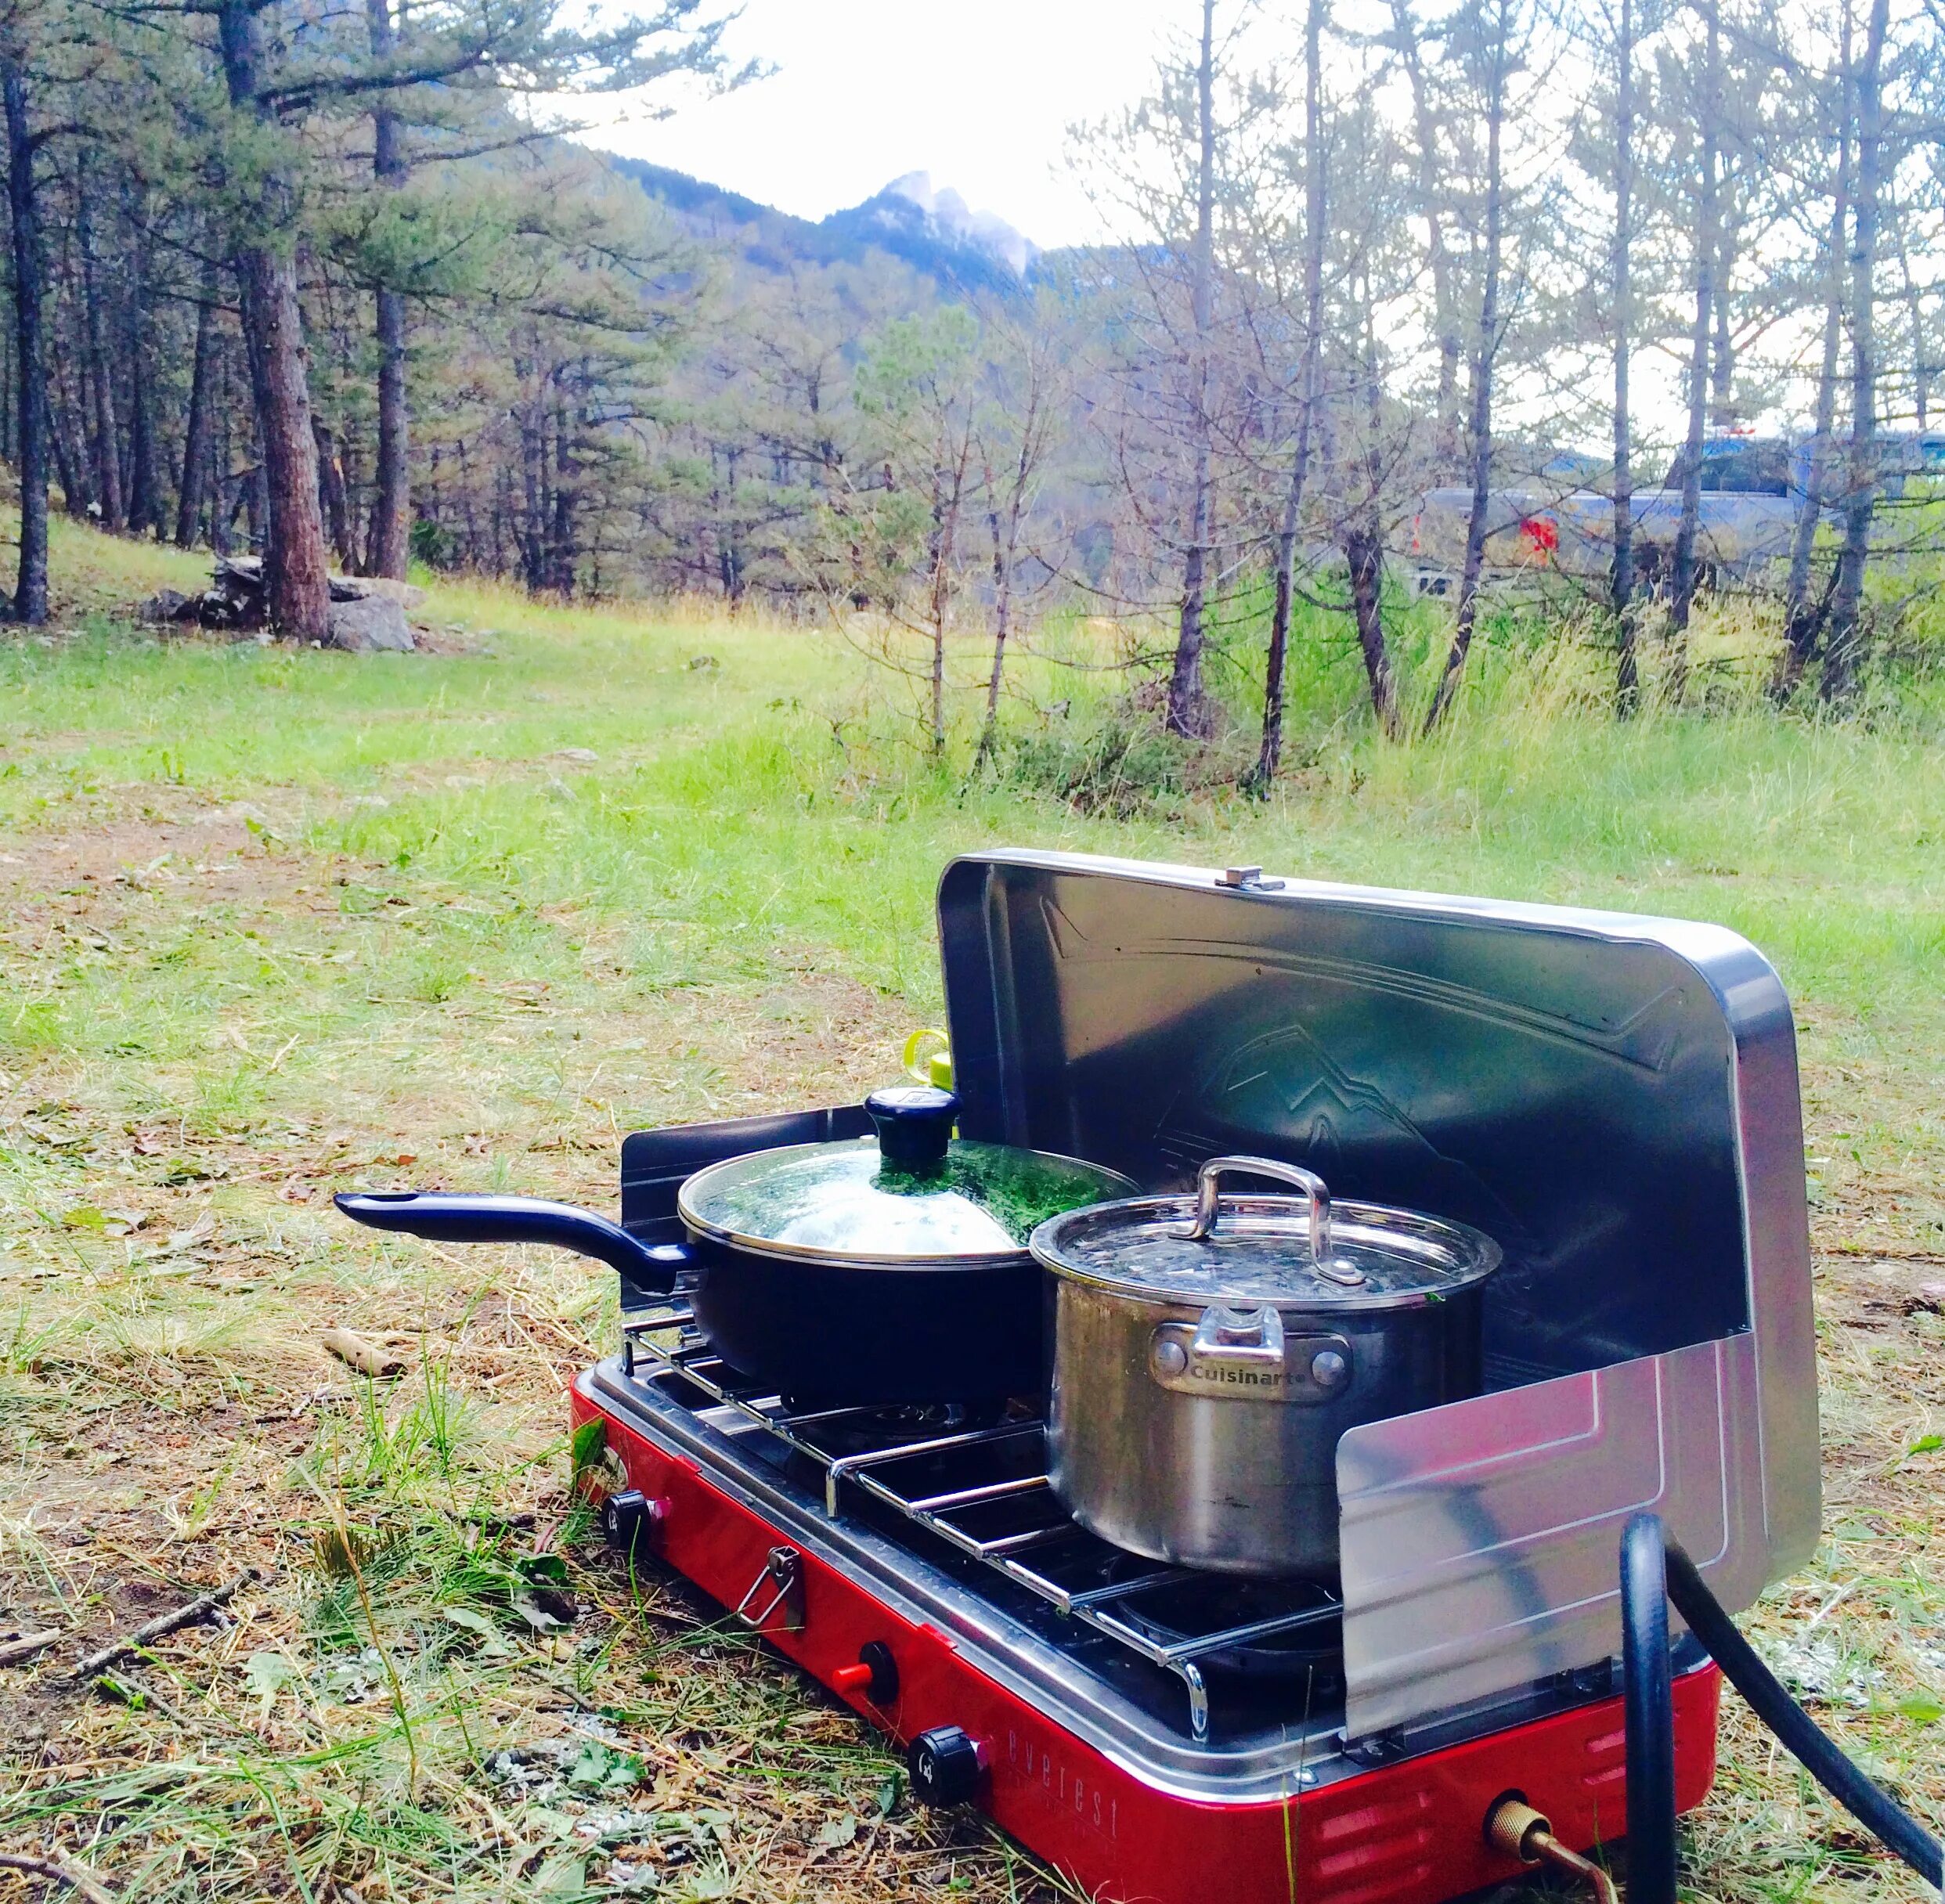 Camping stove. Газовая плита для кемпинга. Magic Chef плита для кемпинга. Ignite Plus Camp Stove.